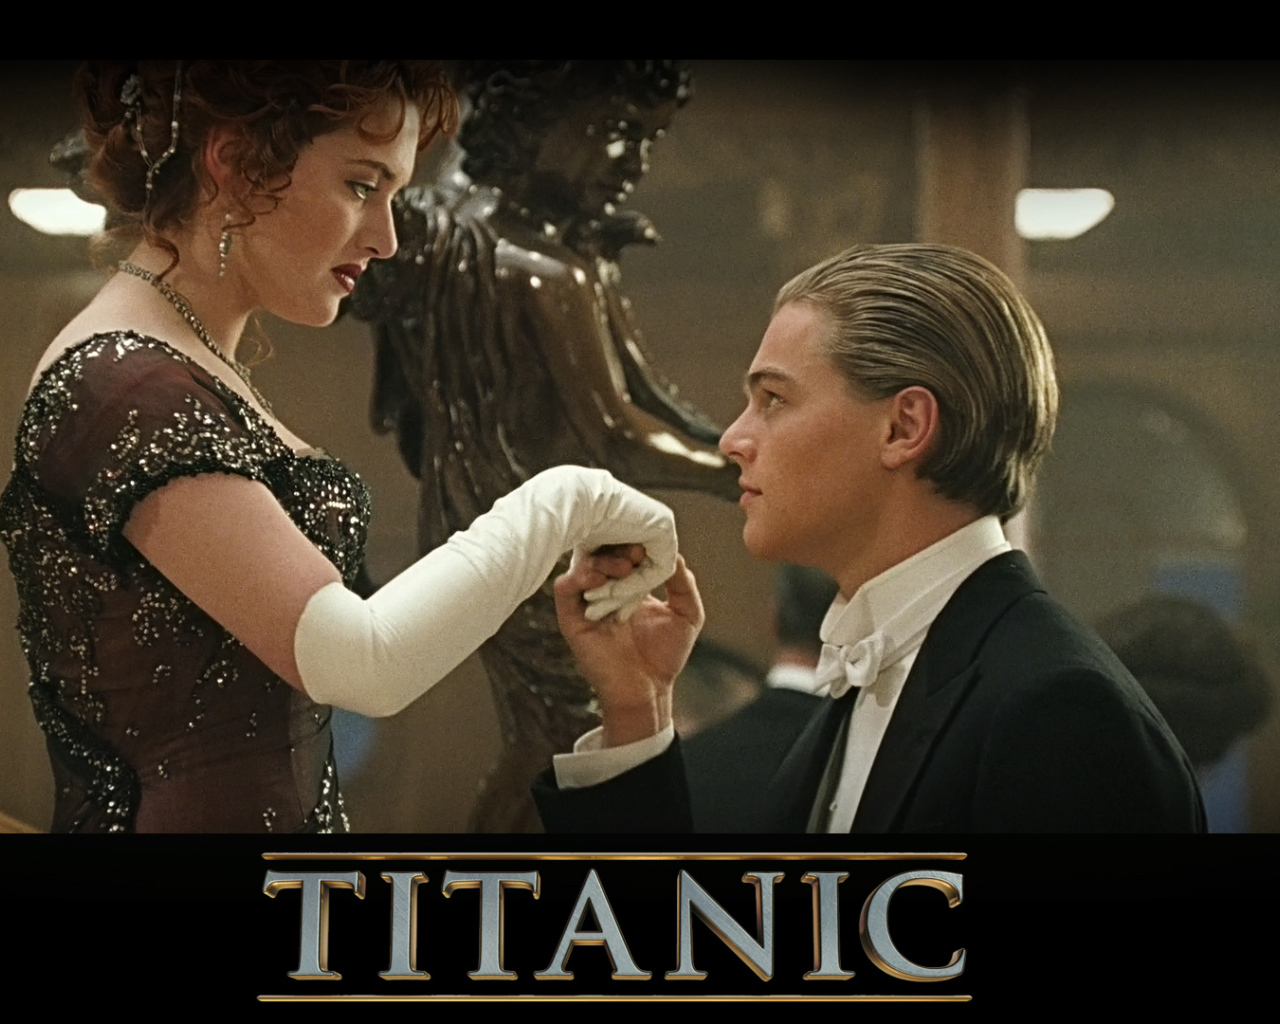 Джек приглашает Роуз на танец в фильме Титаник